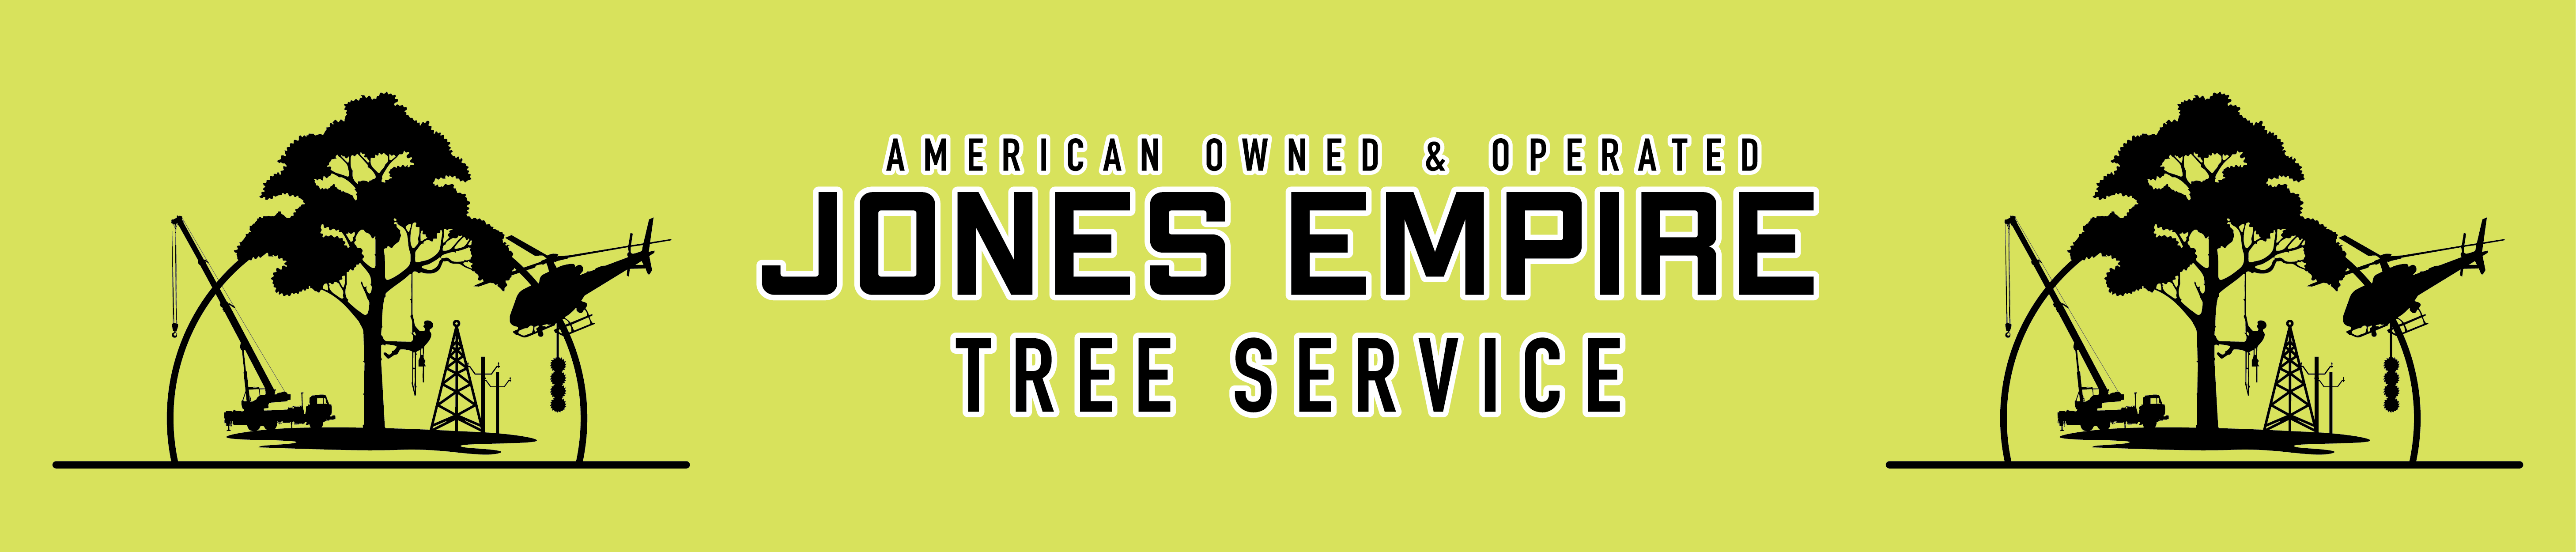 Jones Empire Tree Service